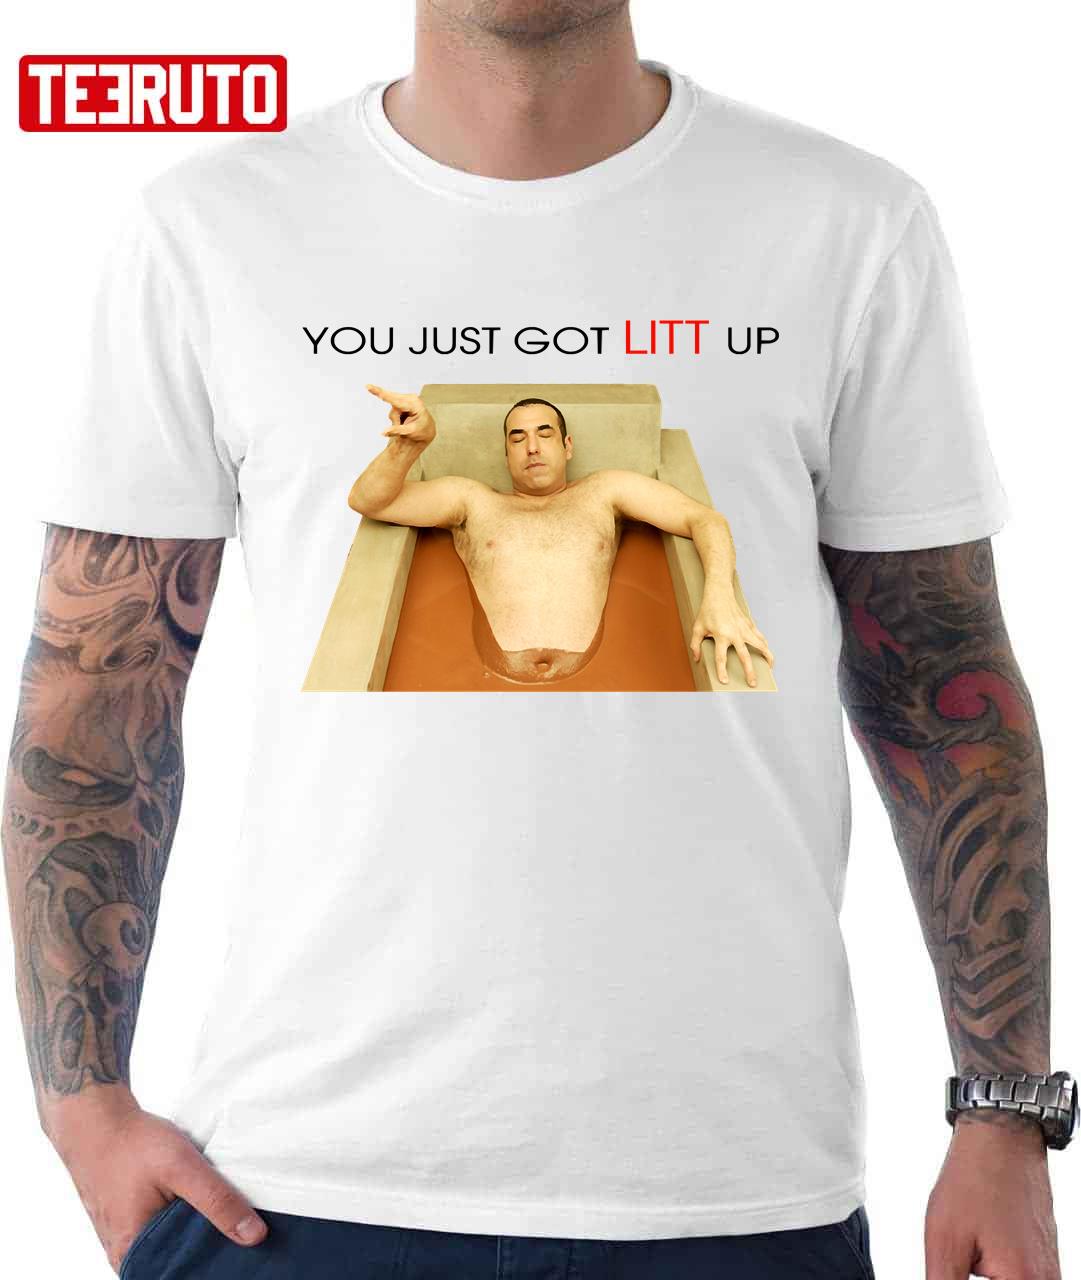 You Just Got Litt Up Shirt, Litt Up Tee, Louis Litt Tee, Harvey